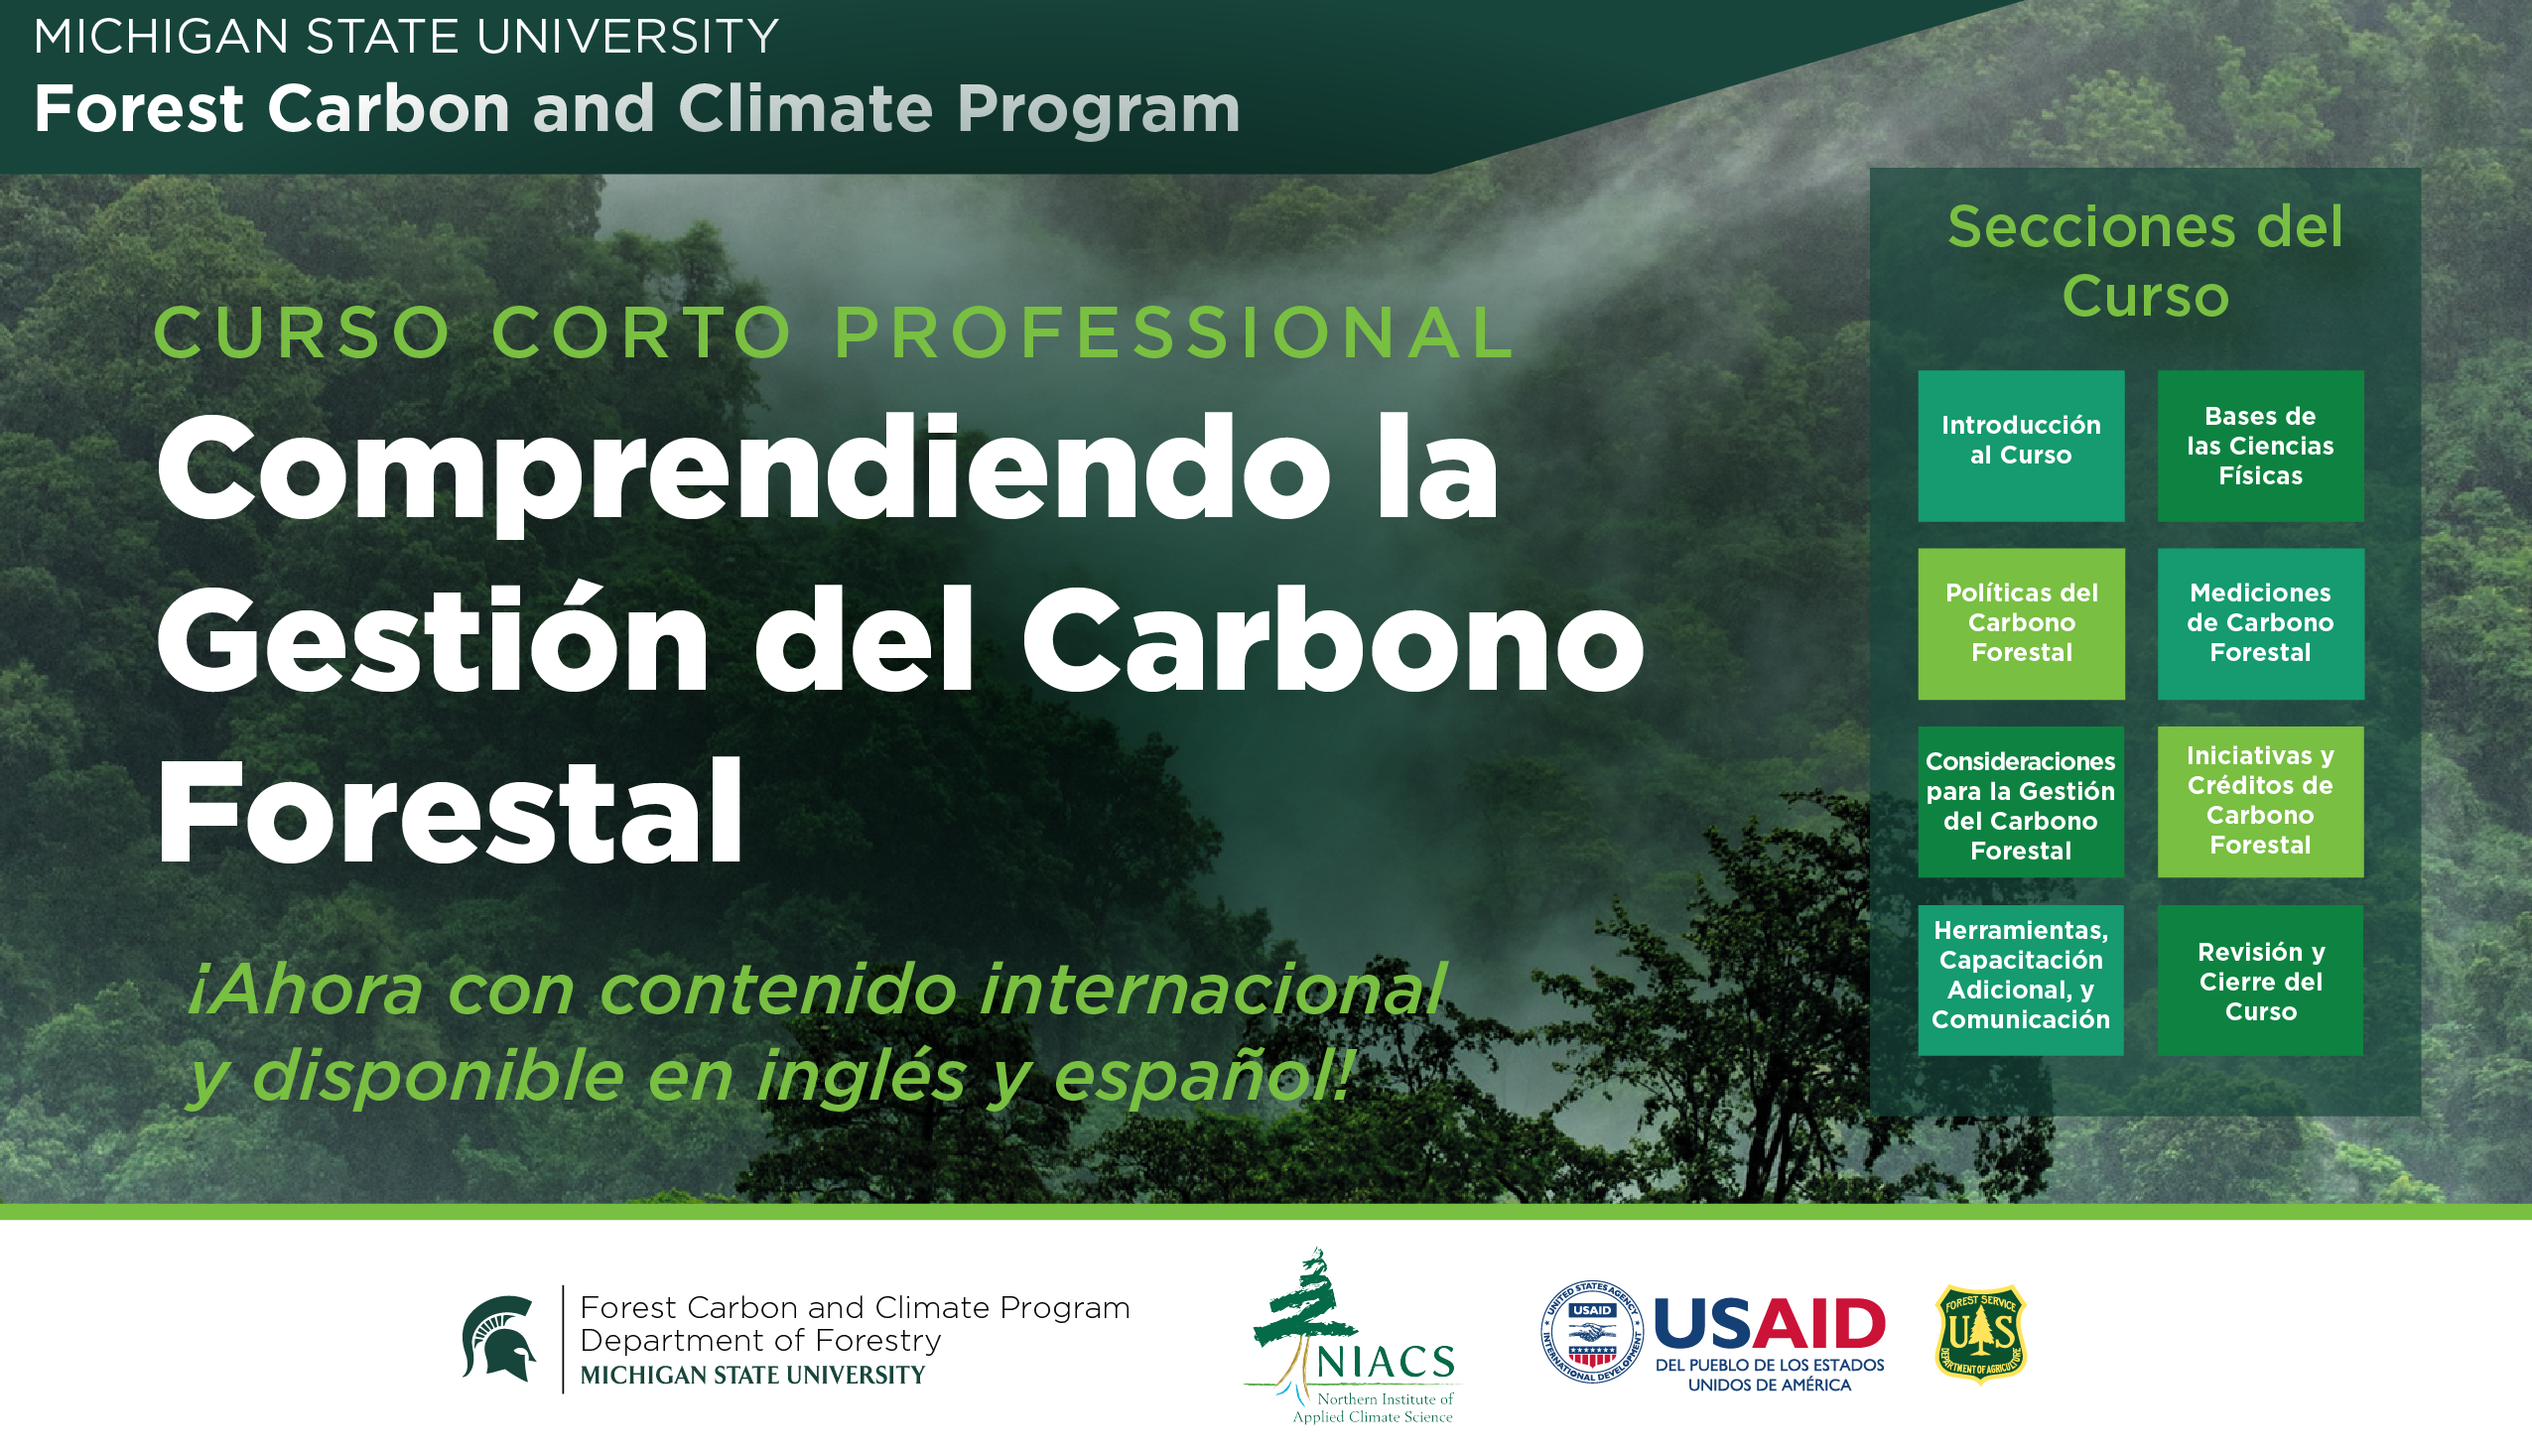 Comprendiendo la Gestión del Carbono Forestal, ahora con contenido internacional y disponible en inglés y español